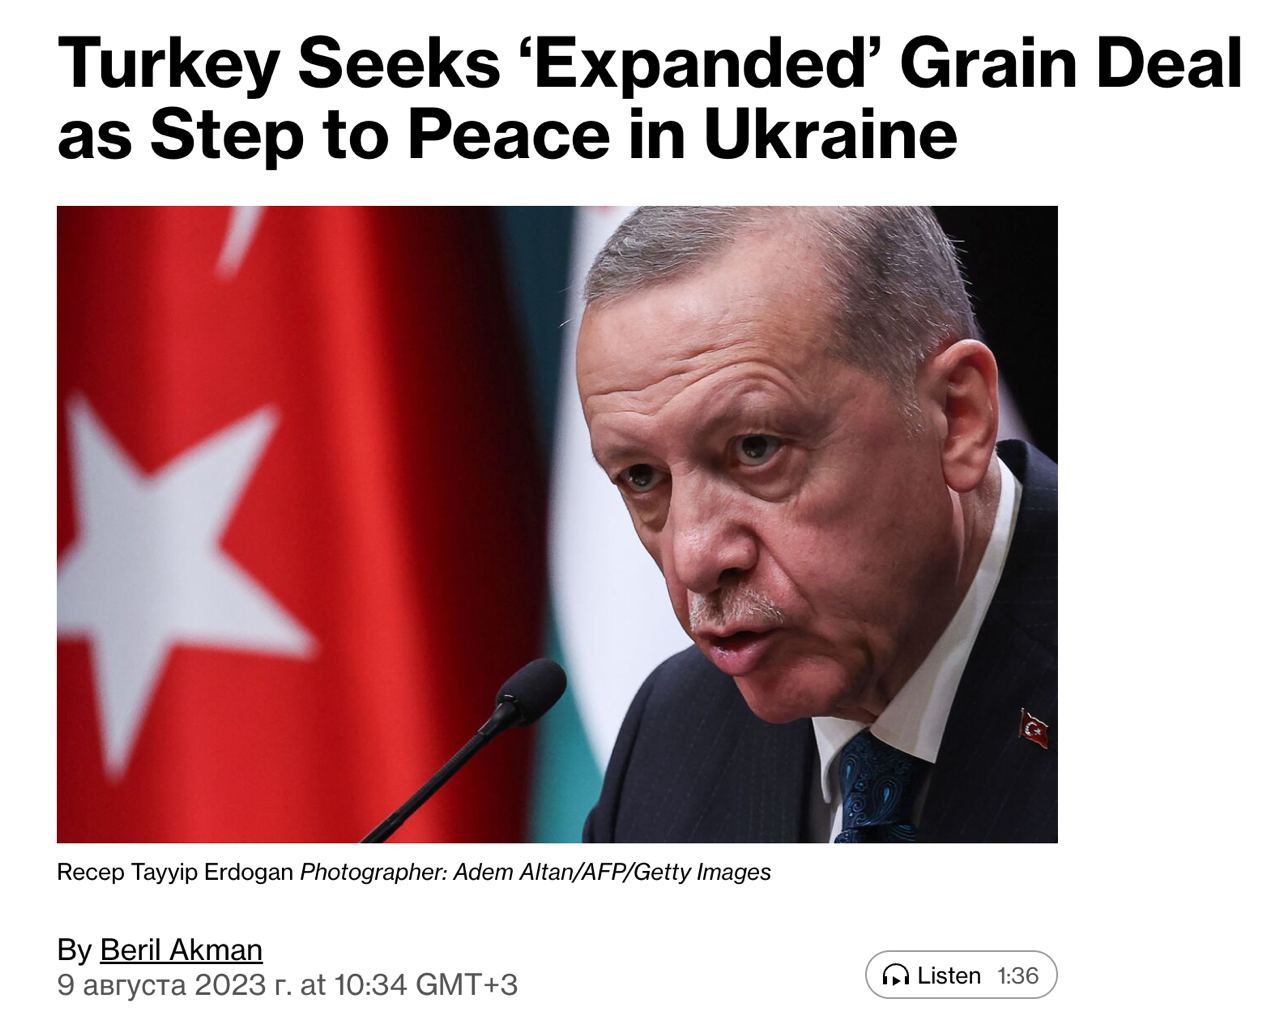 Эрдоган пытается возобновить зерновую сделку